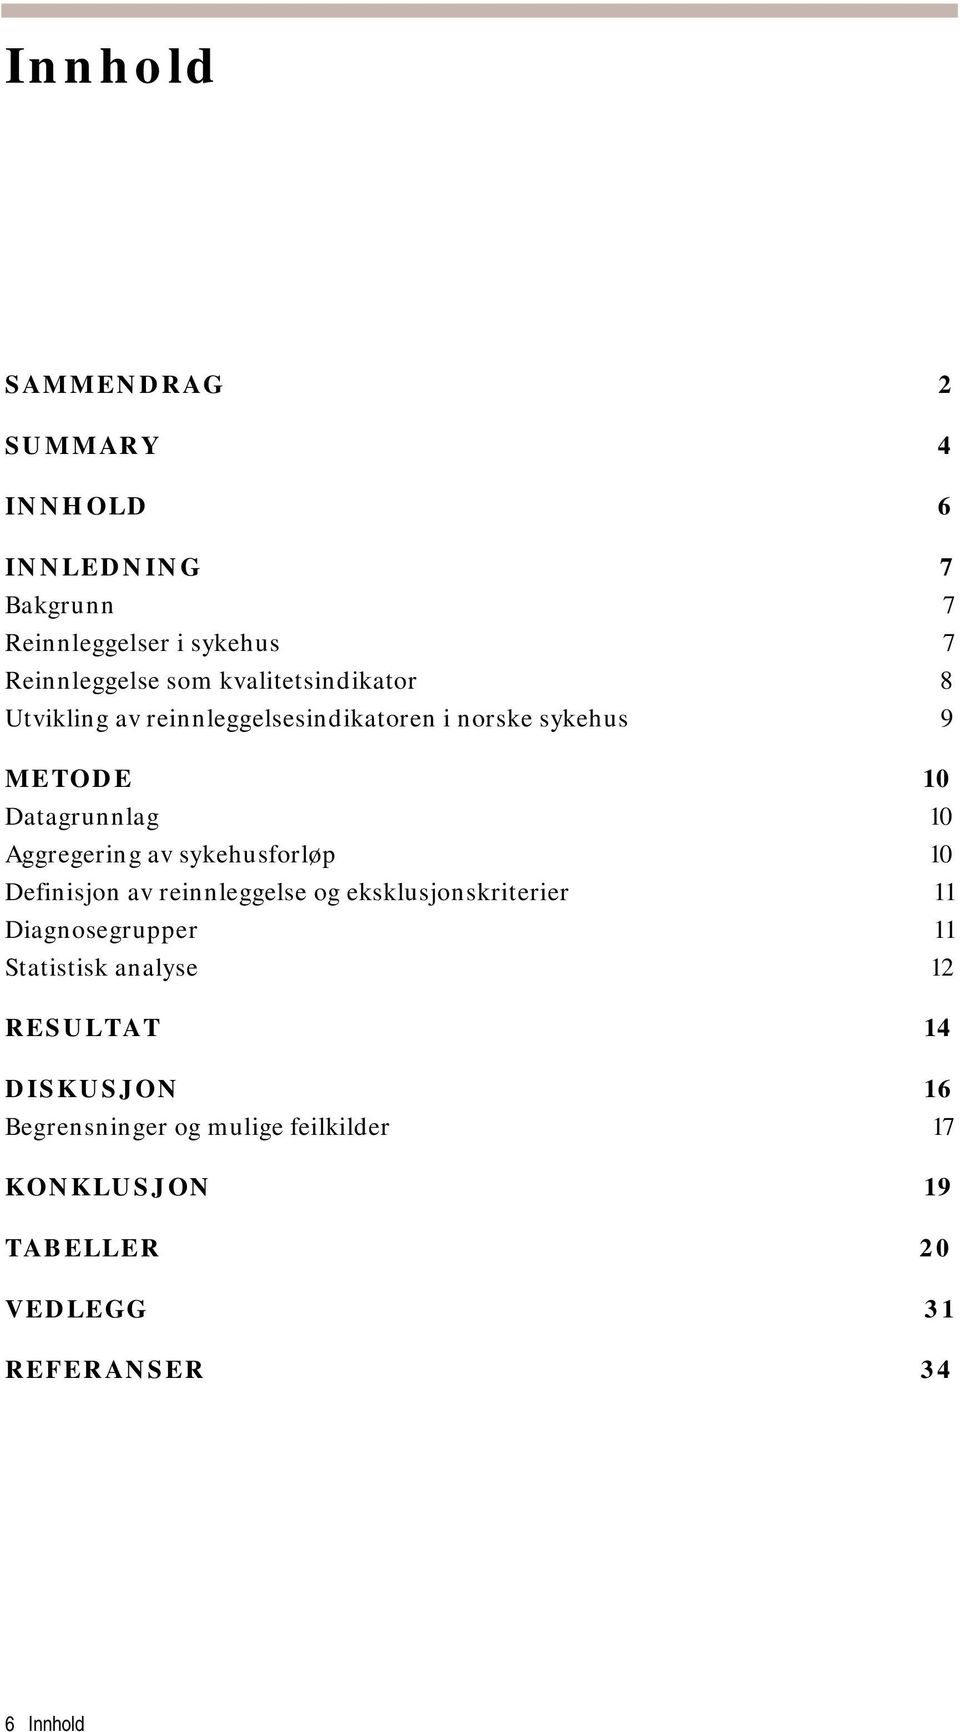 av sykehusforløp 10 Definisjon av reinnleggelse og eksklusjonskriterier 11 Diagnosegrupper 11 Statistisk analyse 12